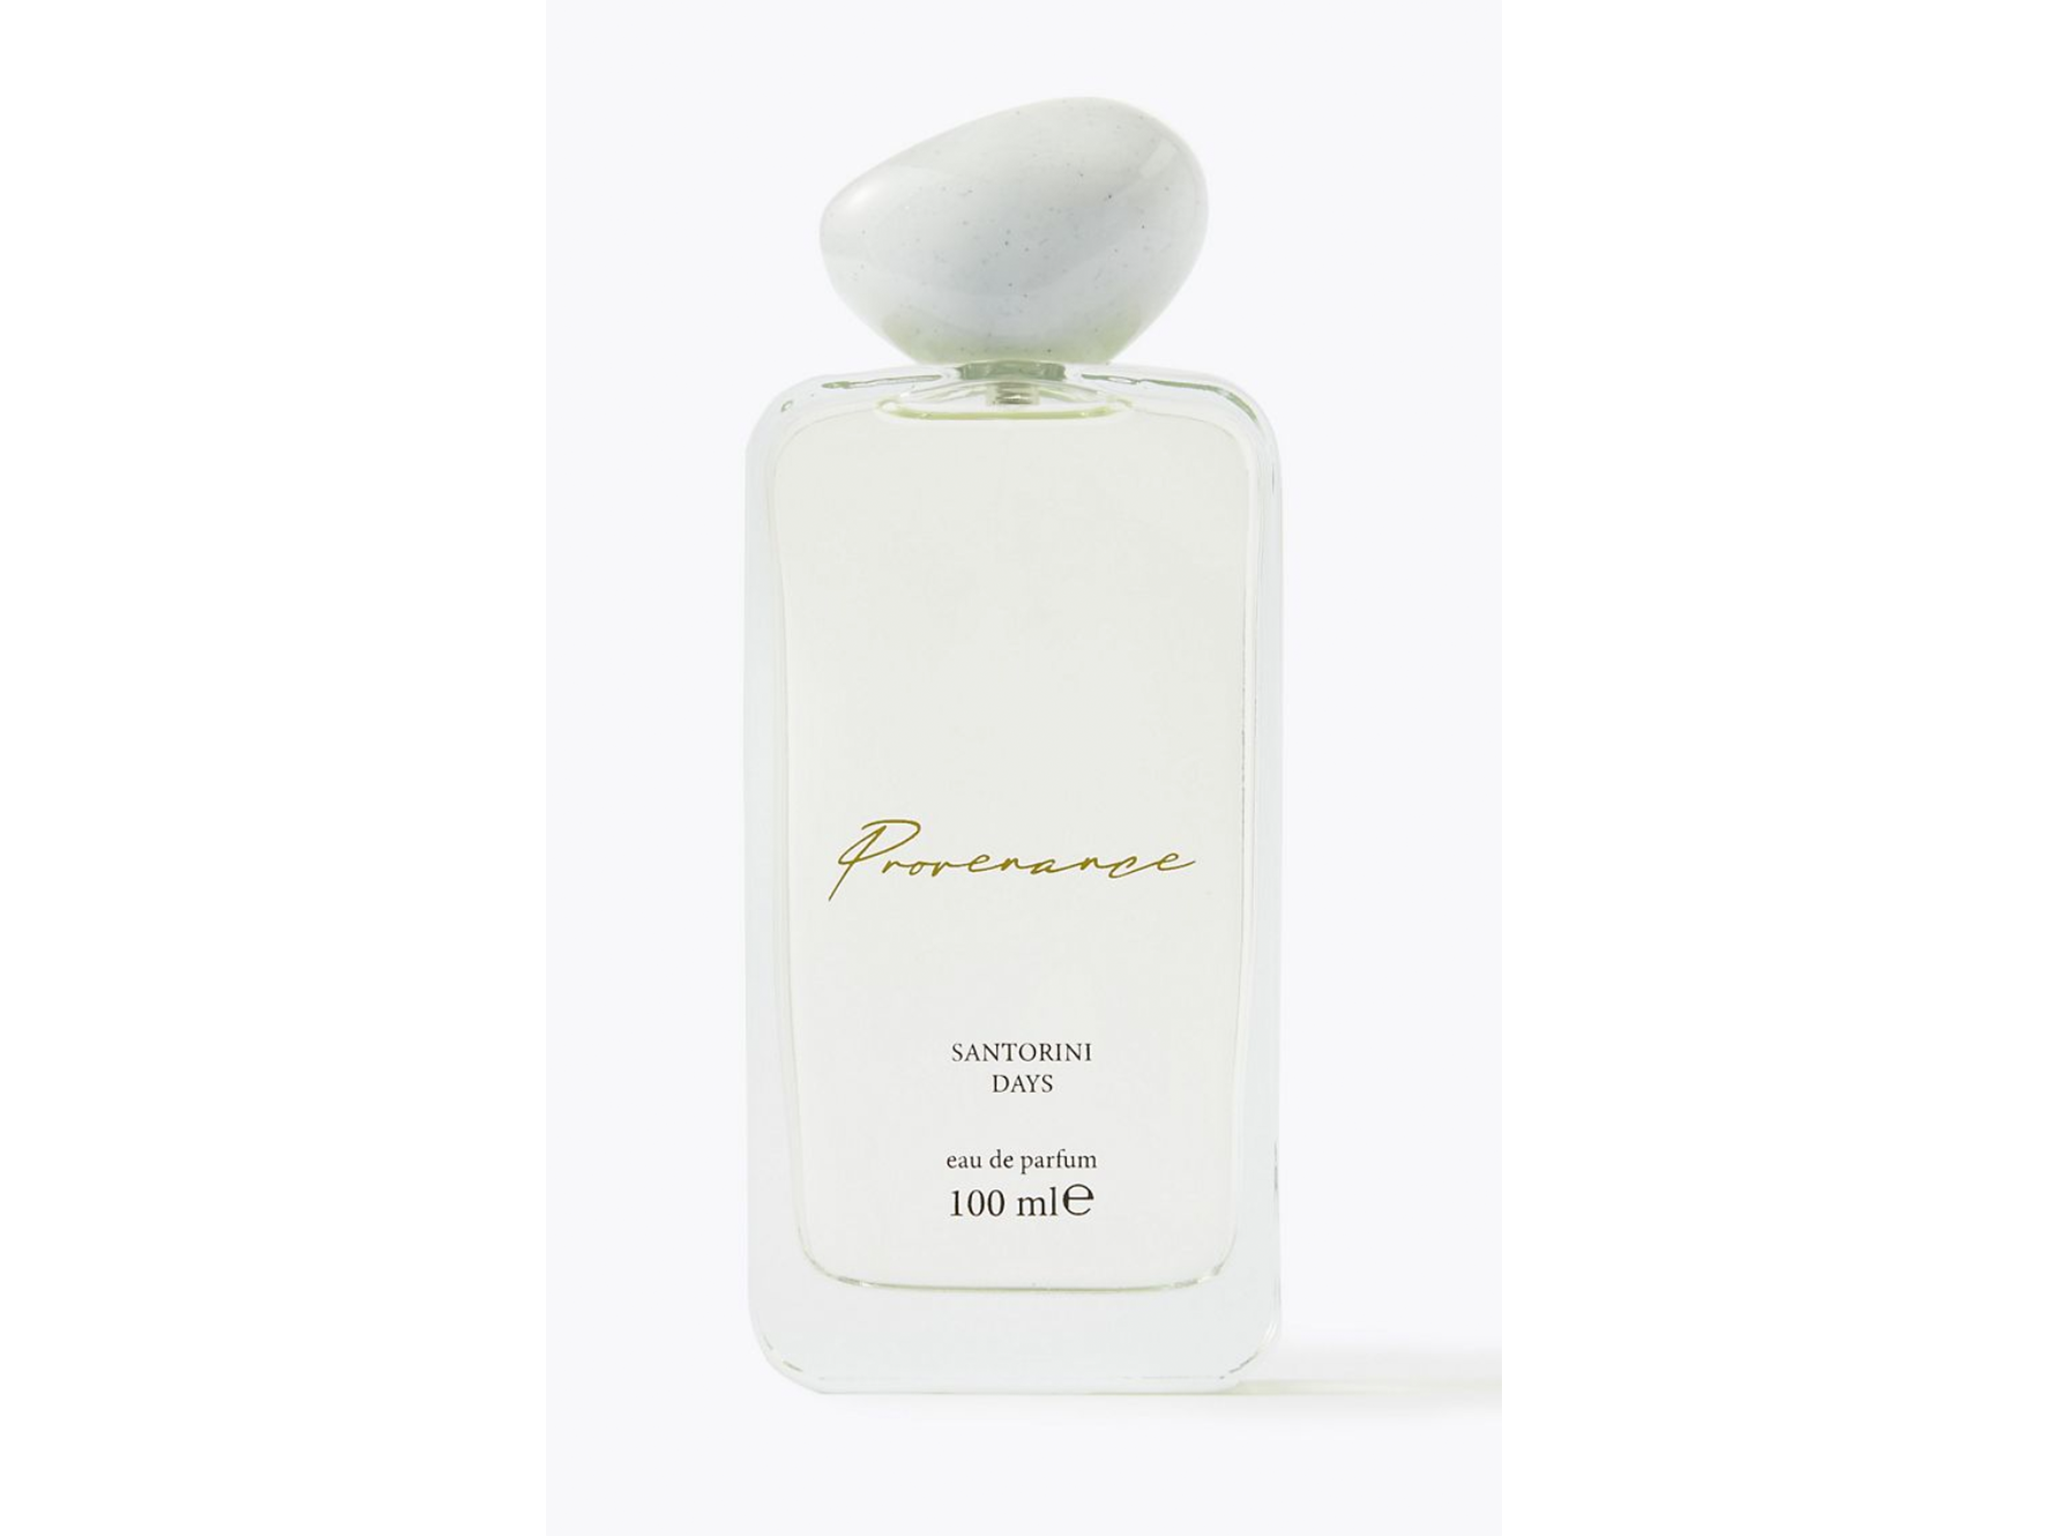 bargain beauty buys M&S Santorini days eau de parfum